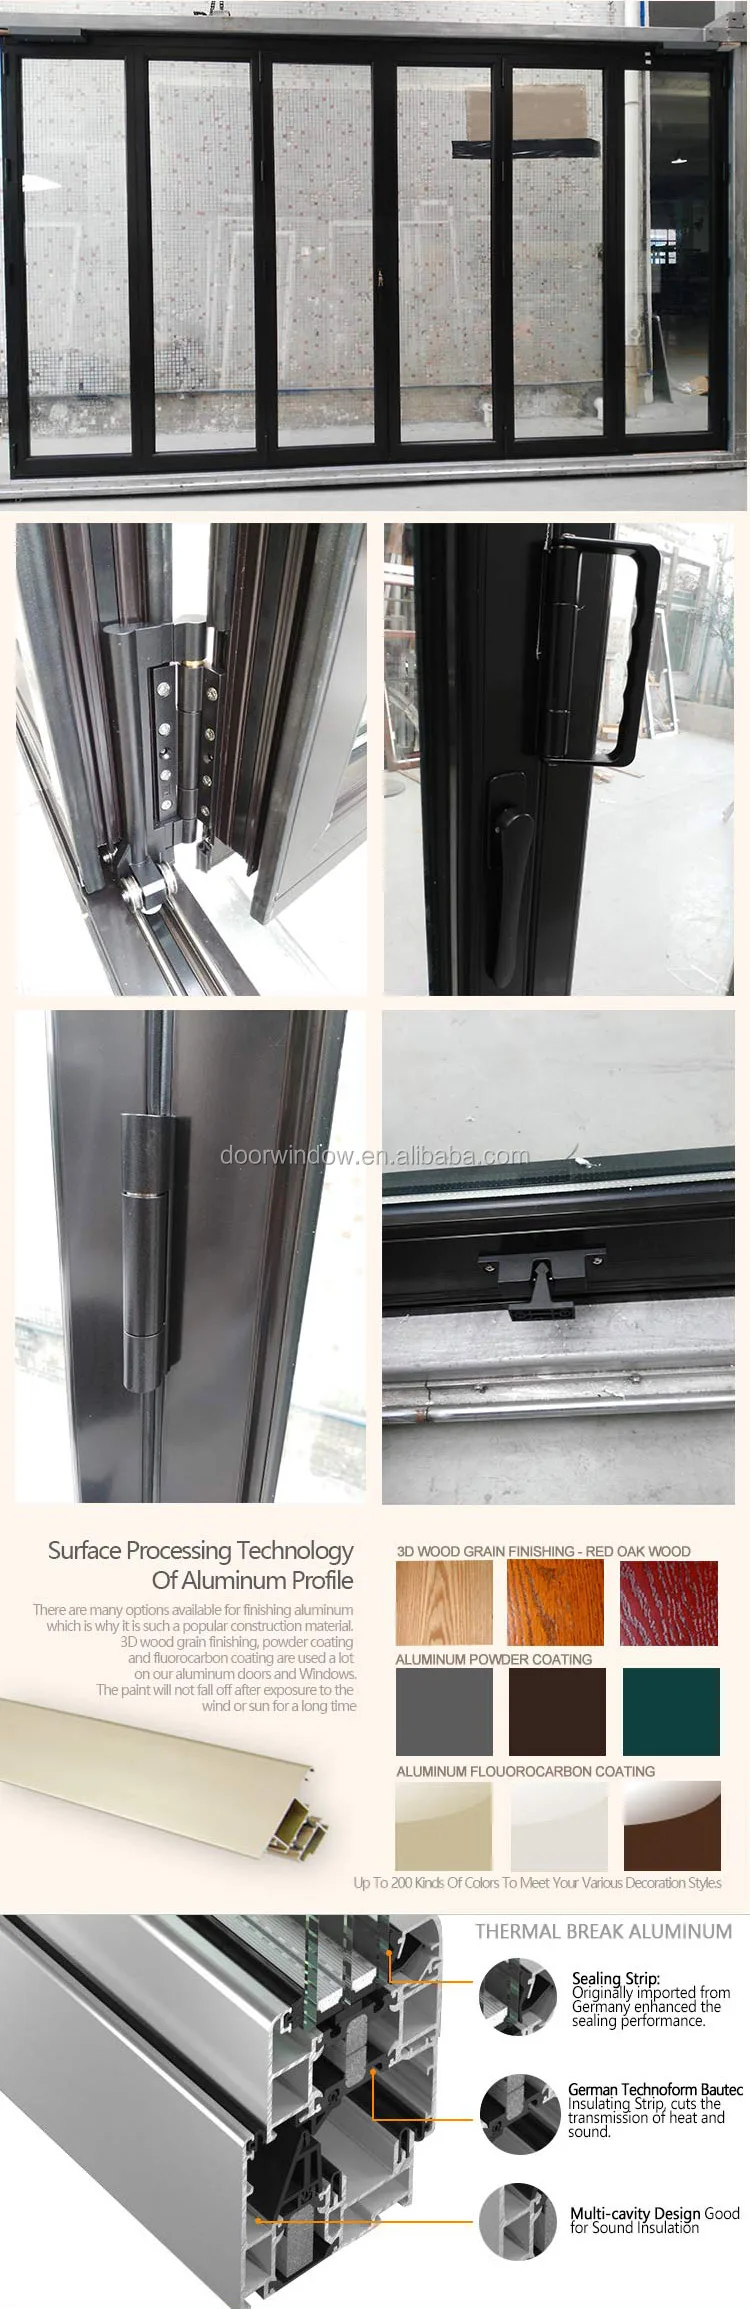 Doorwin front door-Home front door main gate colors thermal break aluminum bifolding door with certificate